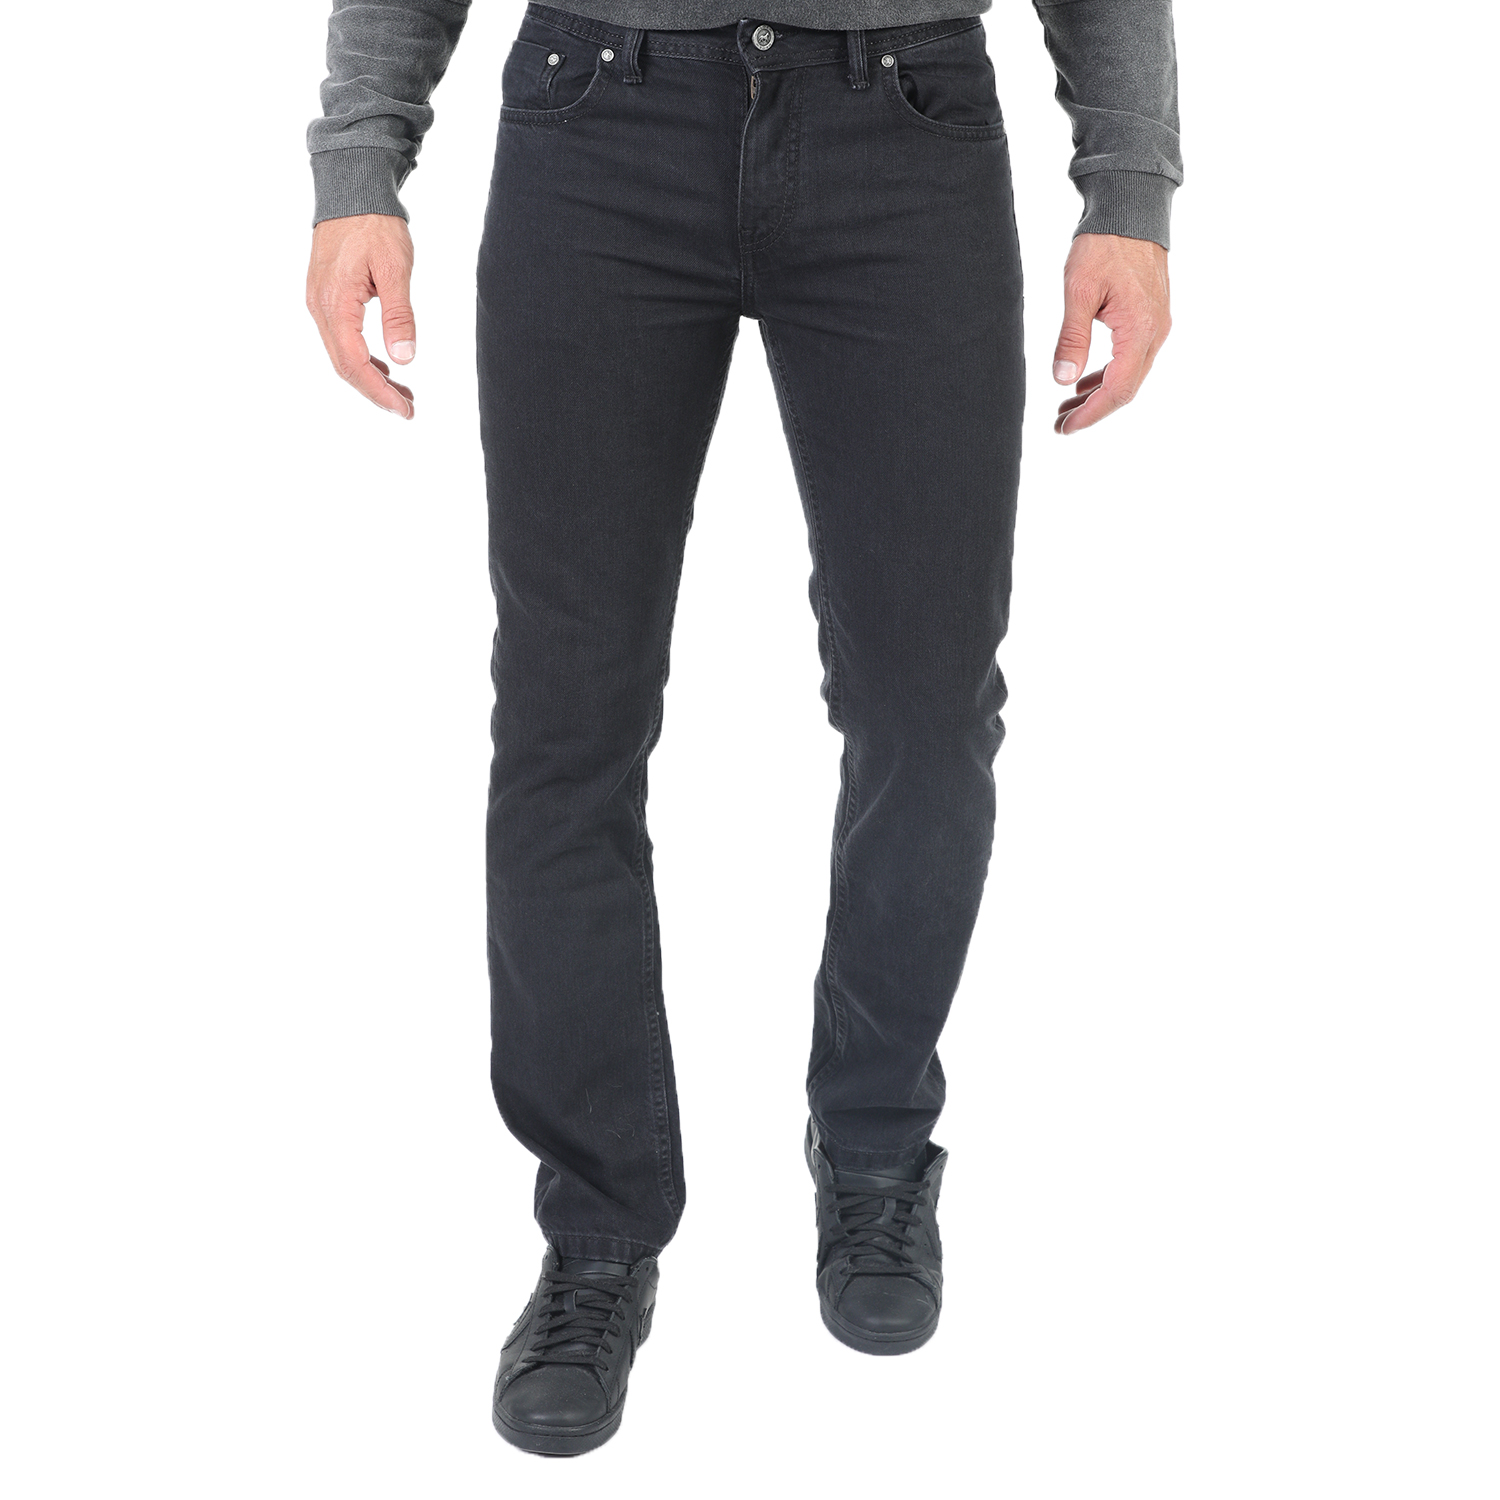 Ανδρικά/Ρούχα/Τζίν/Skinny CATAMARAN SAILWEAR - Ανδρικό jean παντελόνι CATAMARAN SAILWEAR μαύρο